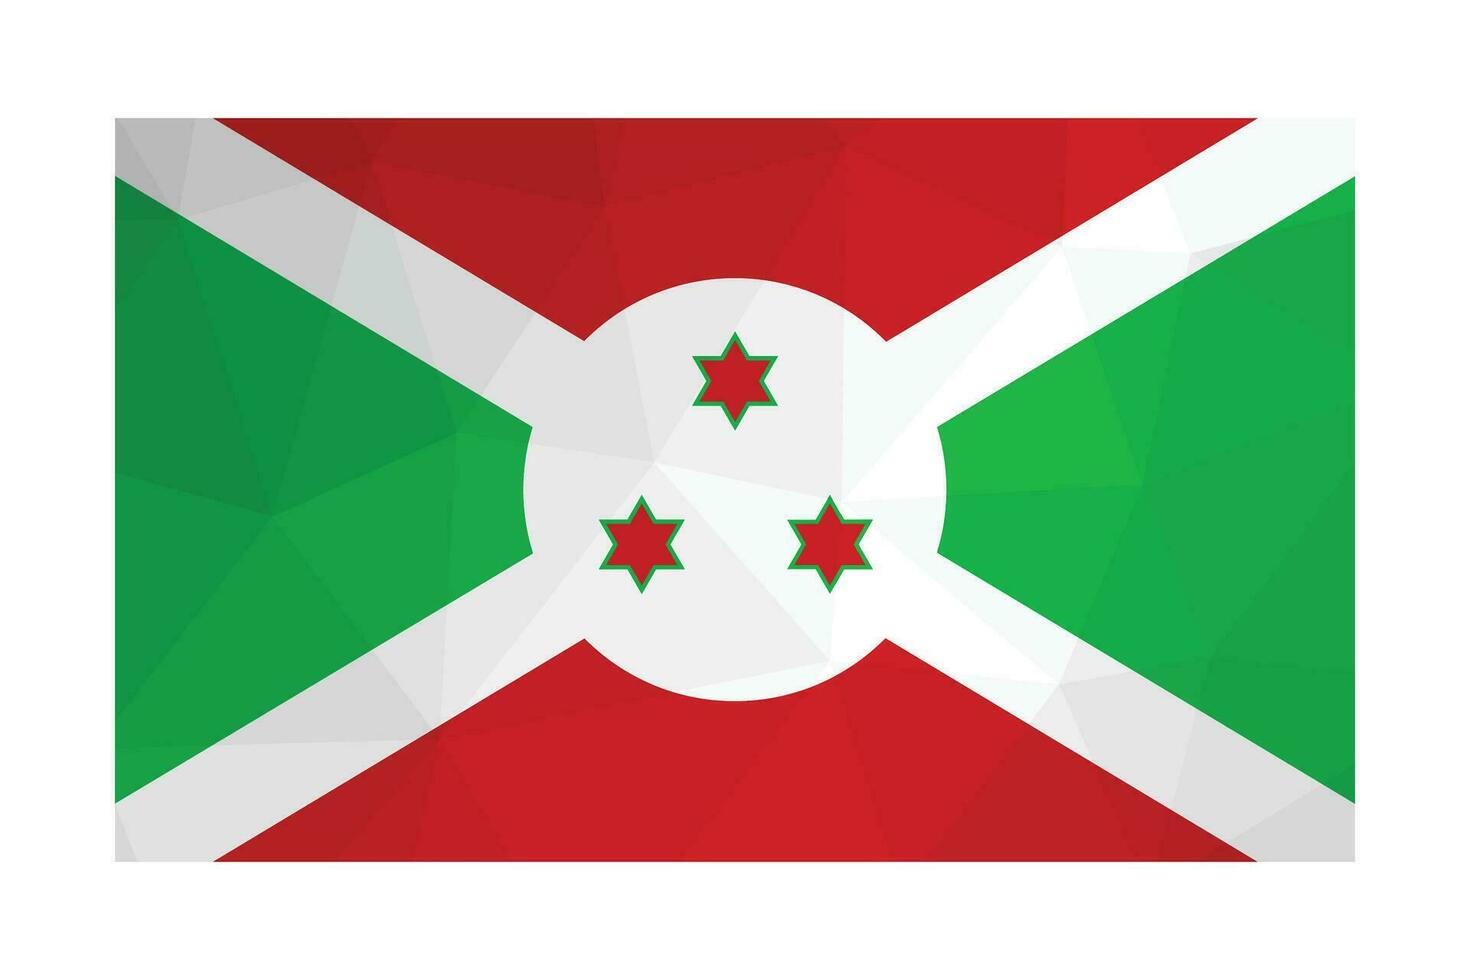 vector aislado ilustración. oficial símbolo de burundi nacional bandera con verde, rojo, blanco colores y seis puntiagudo estrellas. creativo diseño en bajo escuela politécnica estilo con triangular formas degradado efecto.